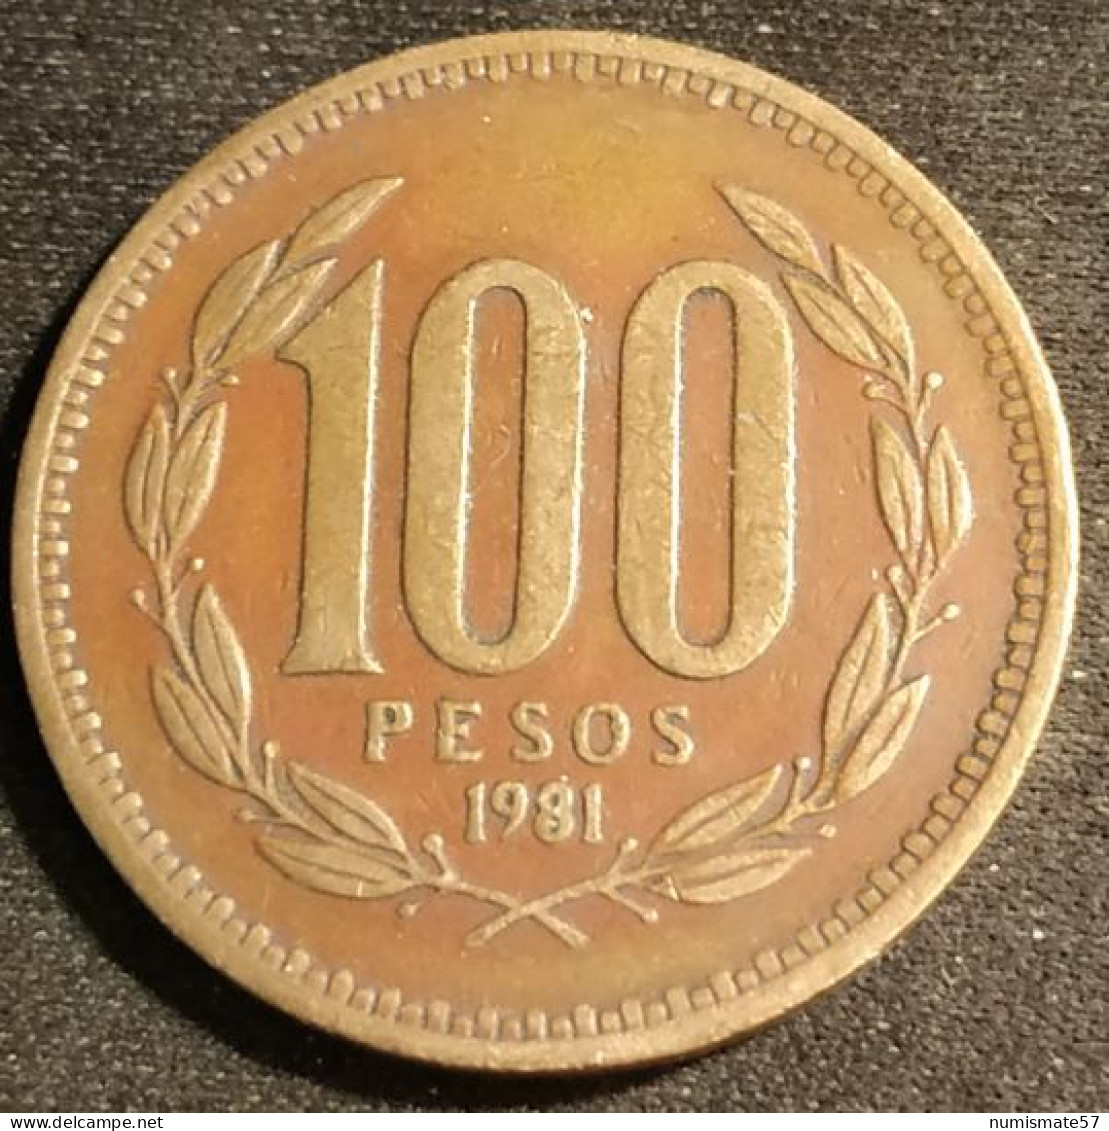 CHILI - CHILE - 100 PESOS 1981 - KM 226.1 ( Date Large ) - Chile